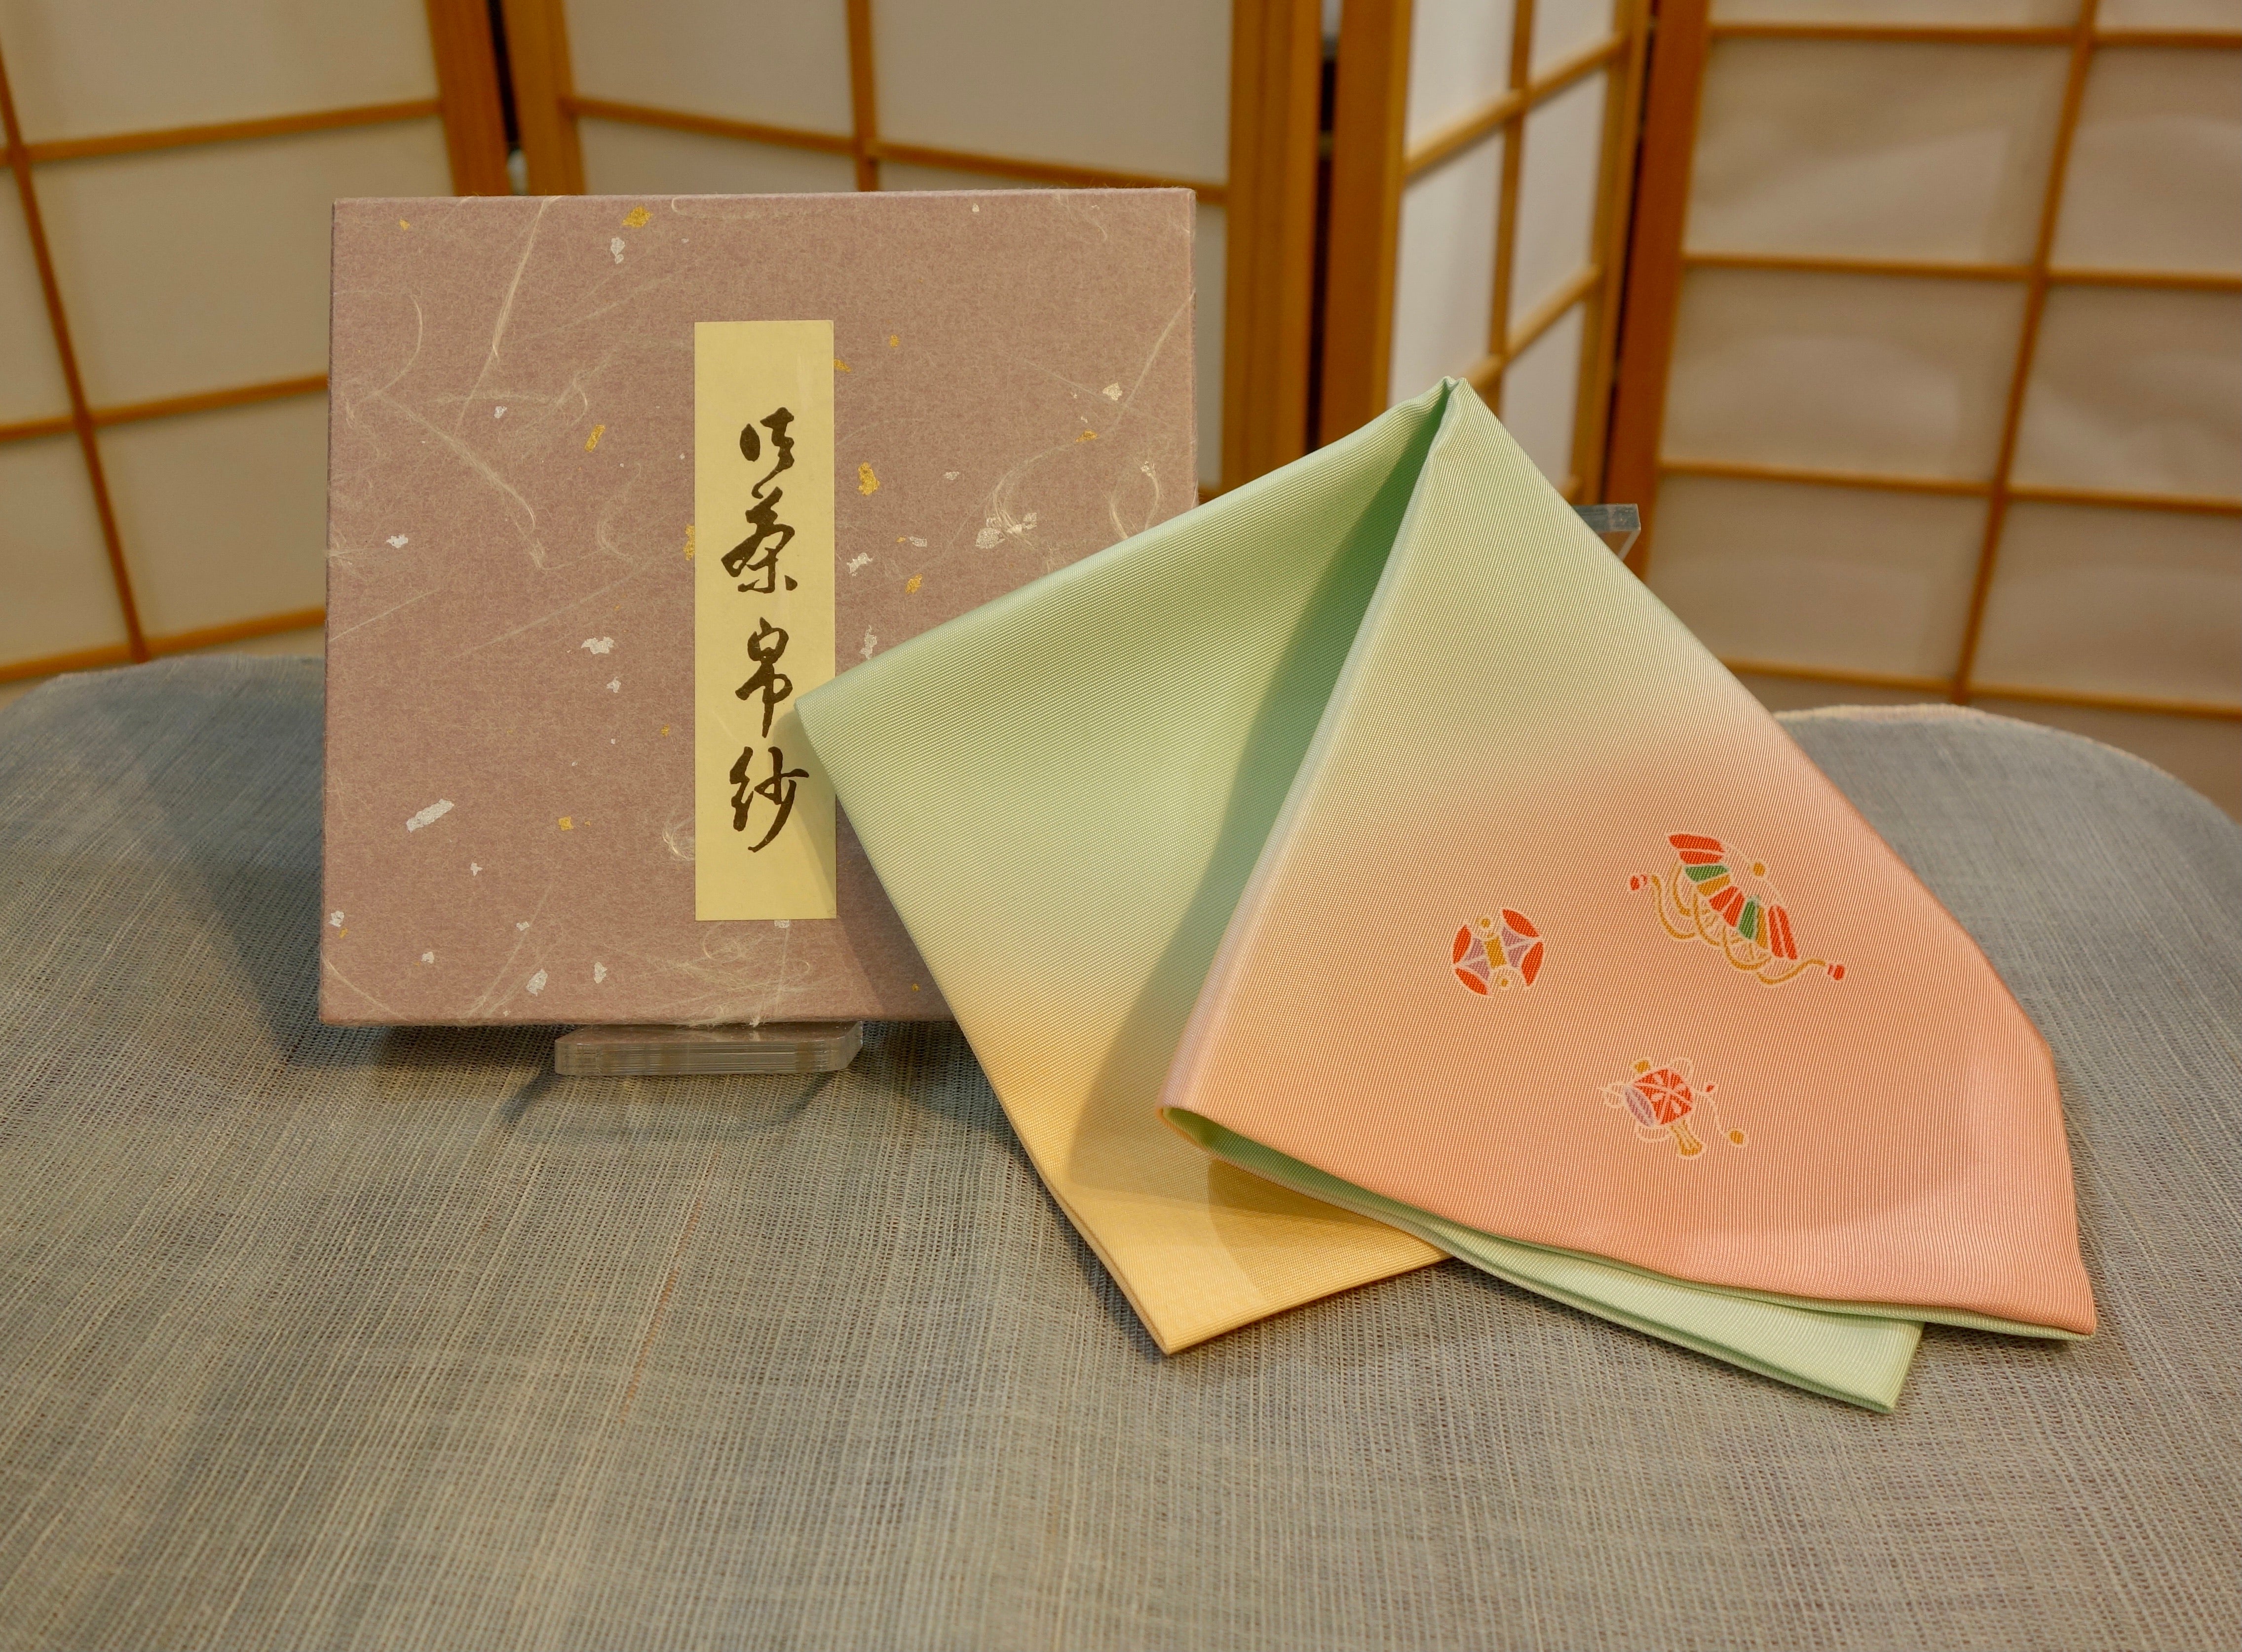 Fukusa - Shoken (Silk Cloth) – MATSU KAZE TEA